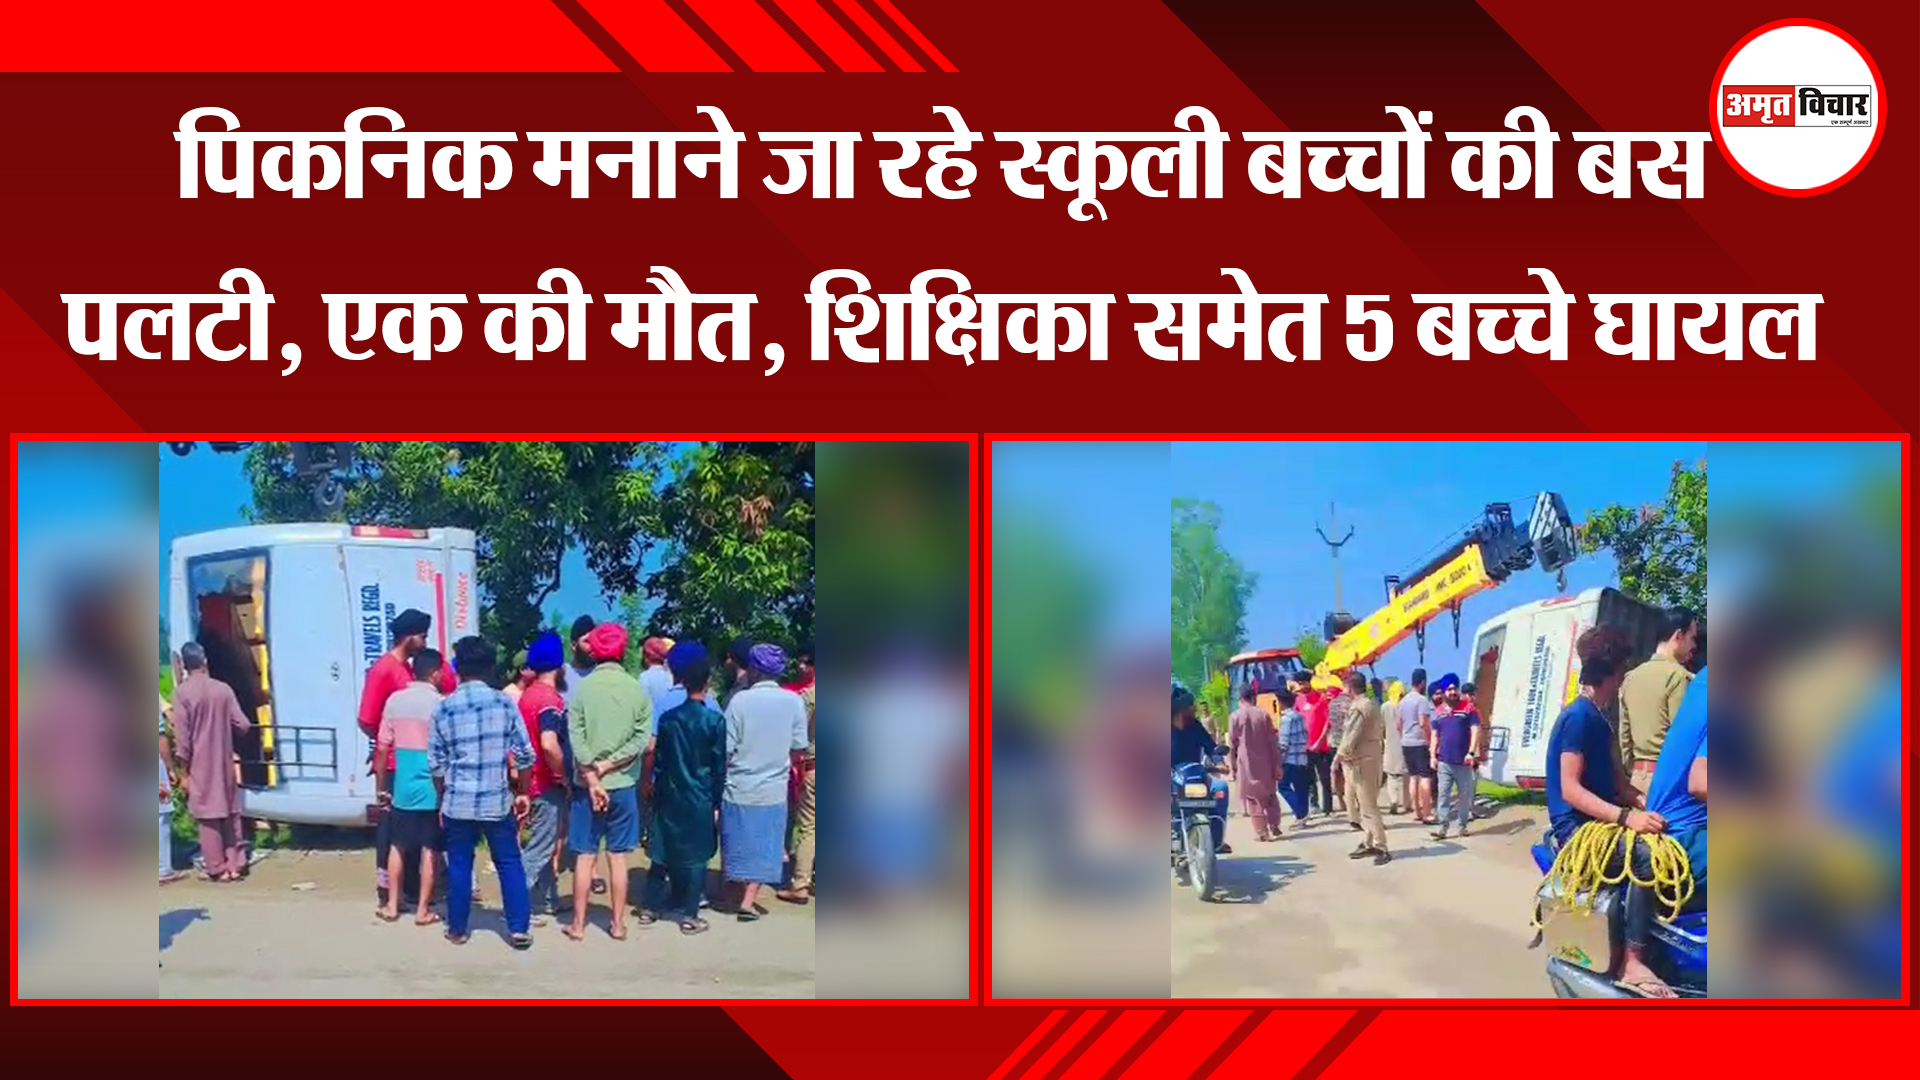 काशीपुर: पिकनिक मनाने जा रहे स्कूली बच्चों की बस पलटी, एक की मौत, शिक्षिका समेत 5 बच्चे घायल